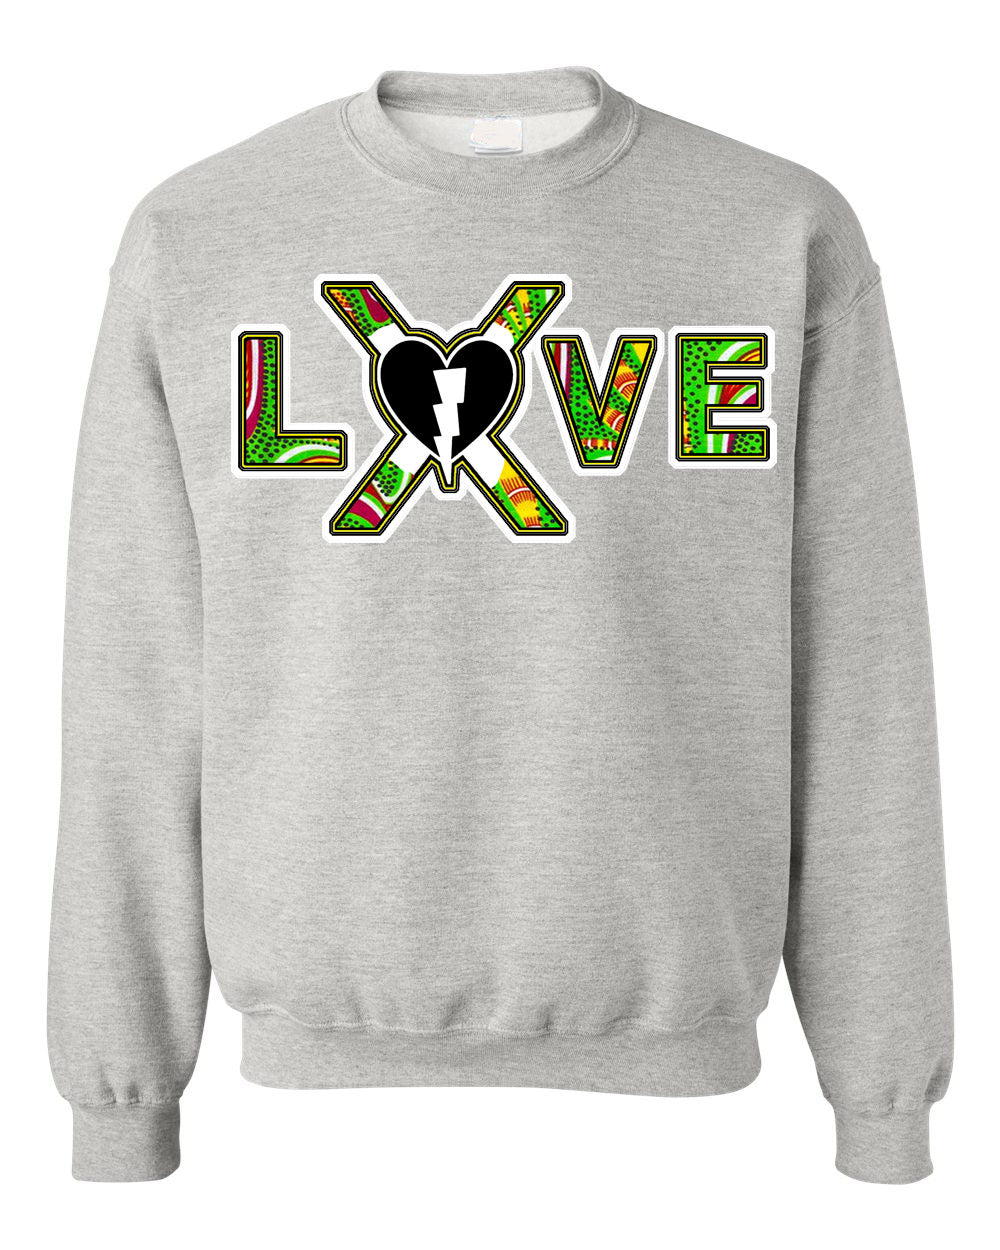 Live X Love Sweatshirt (Green Mamba)